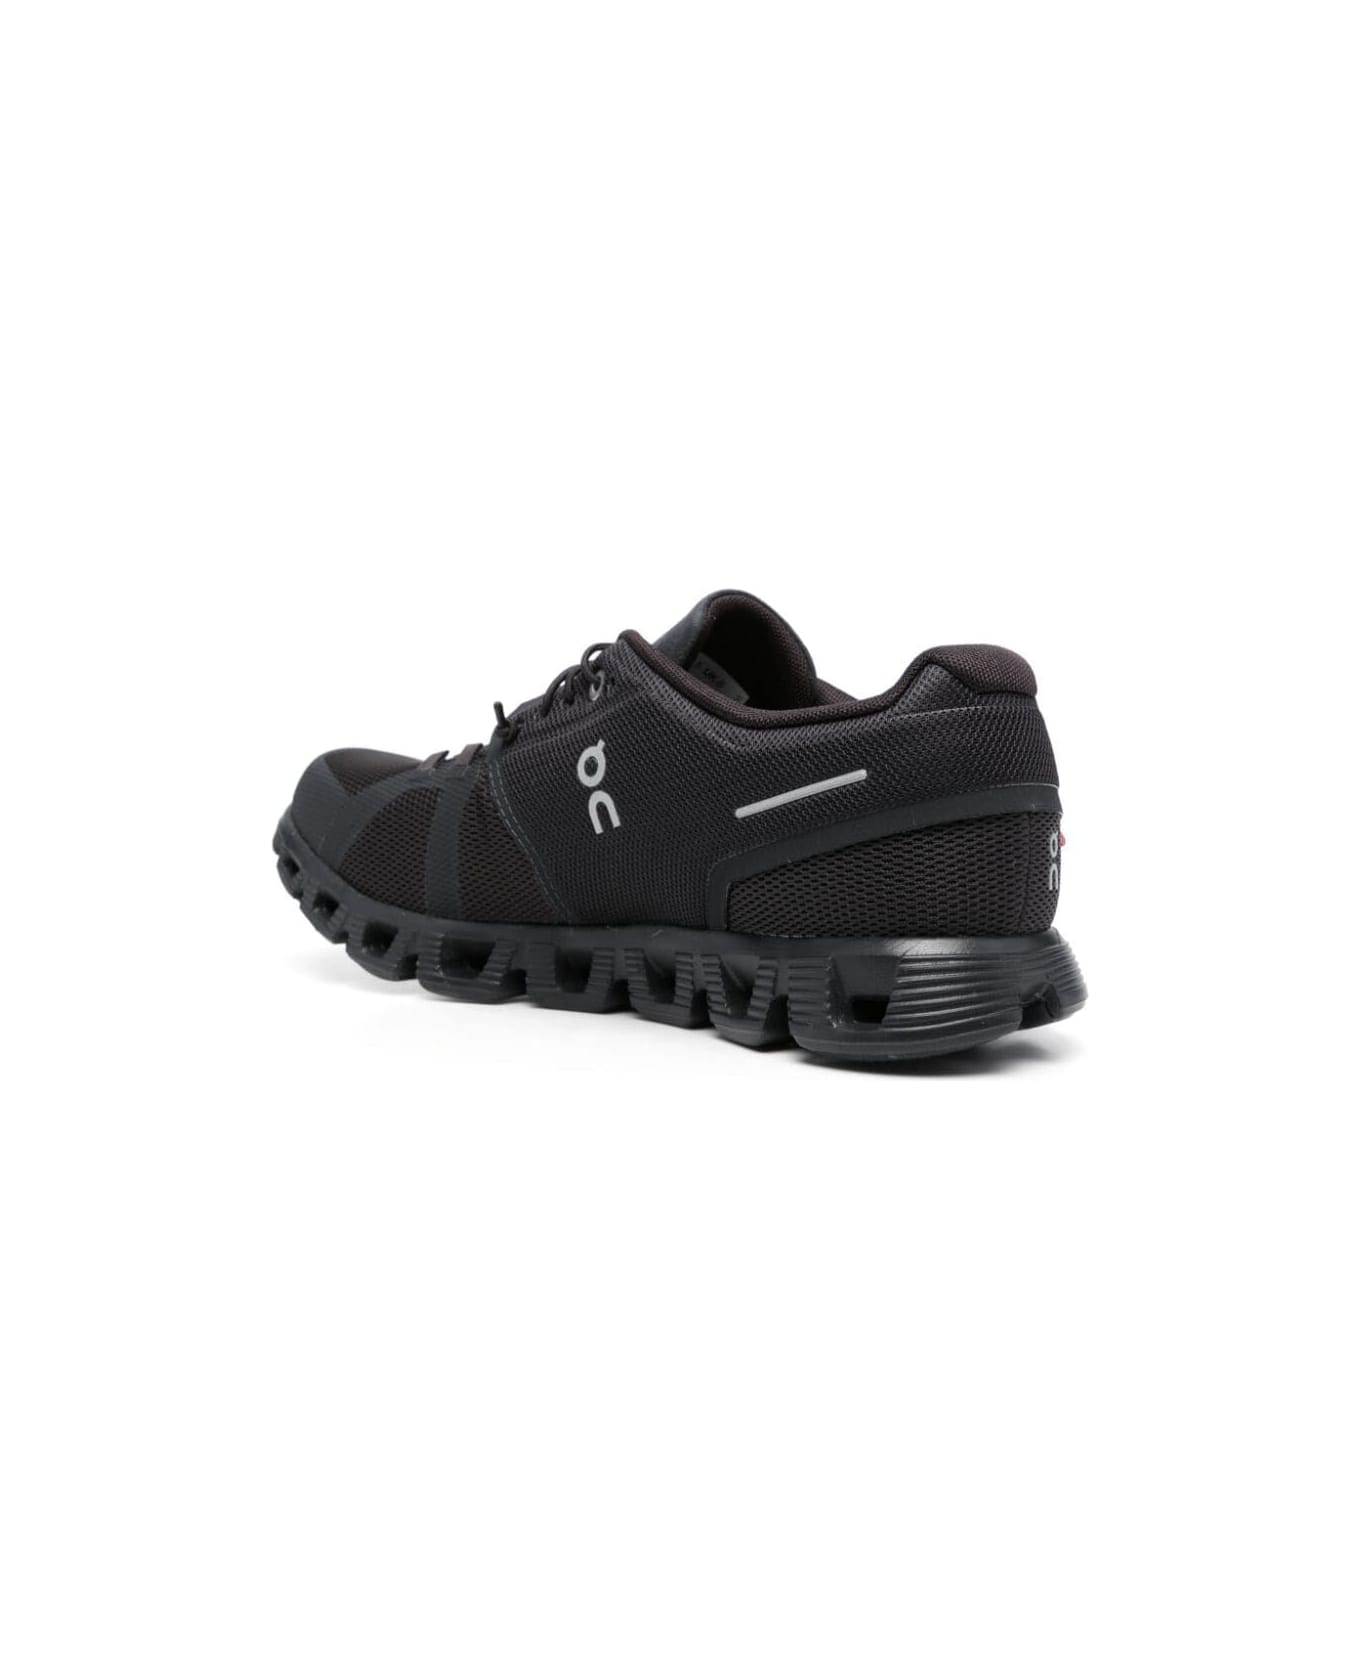 ON Cloud 5 Sneakers - All Black スニーカー